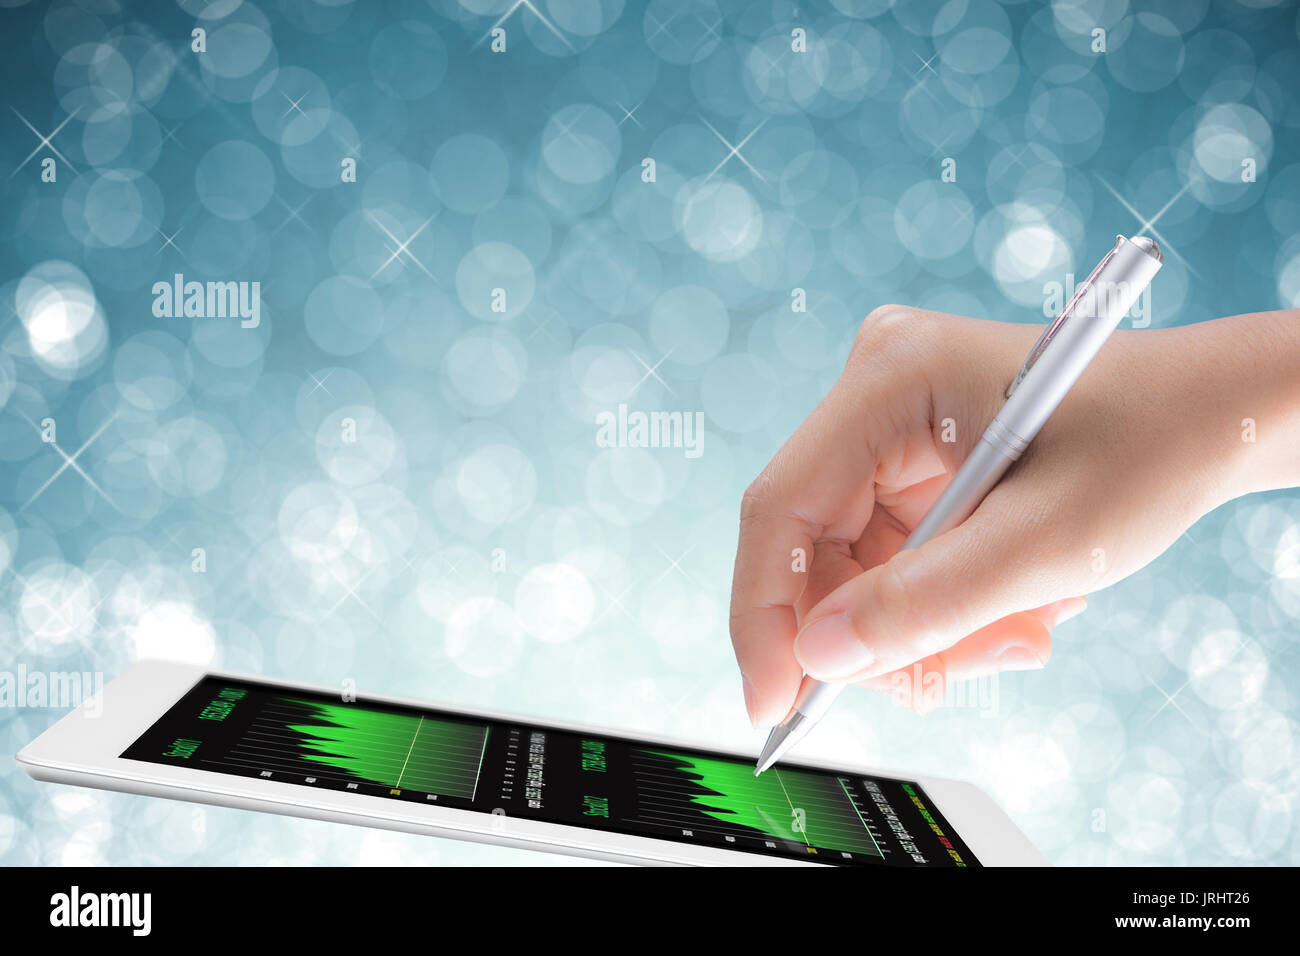 L'analyse des affaires concept avec hand holding pen with digital tablet Banque D'Images